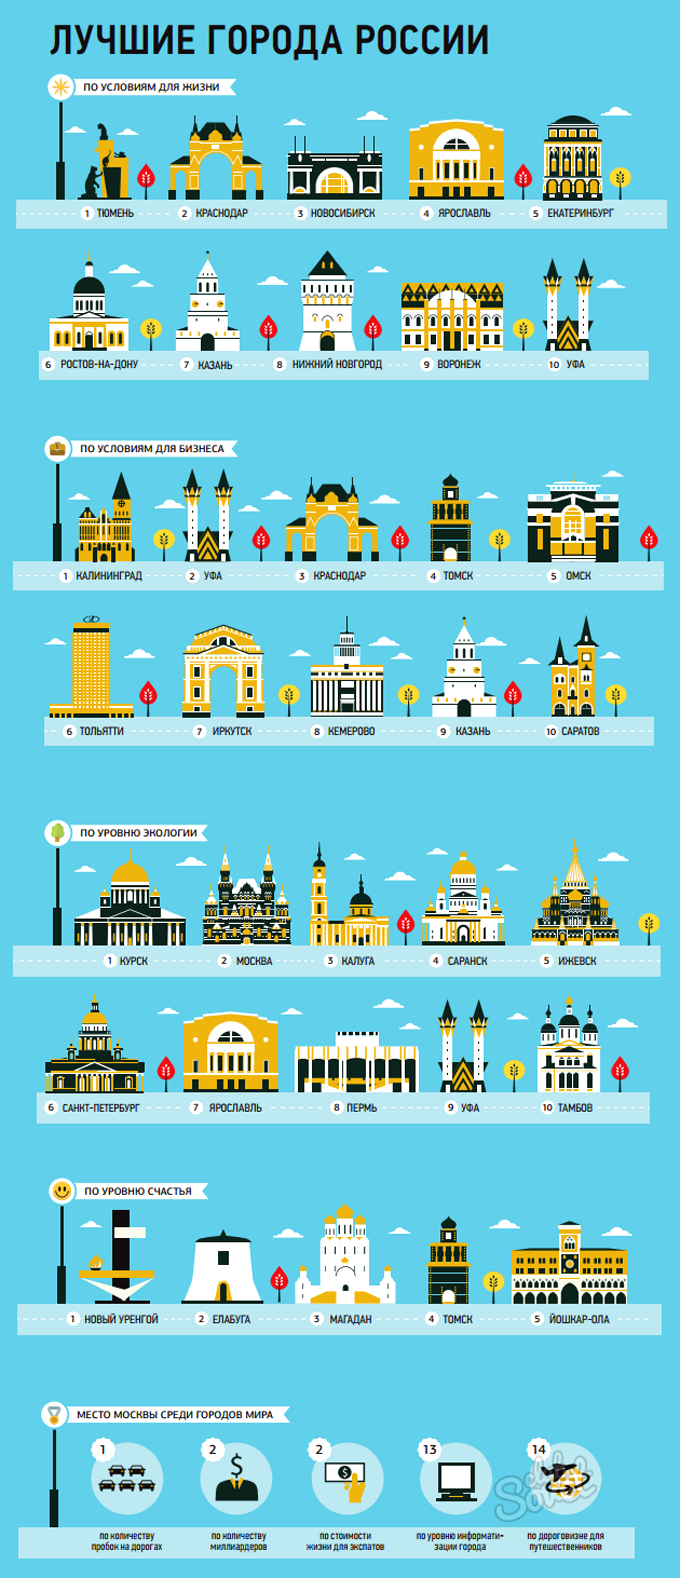 Инфографика “Лучшие города России”